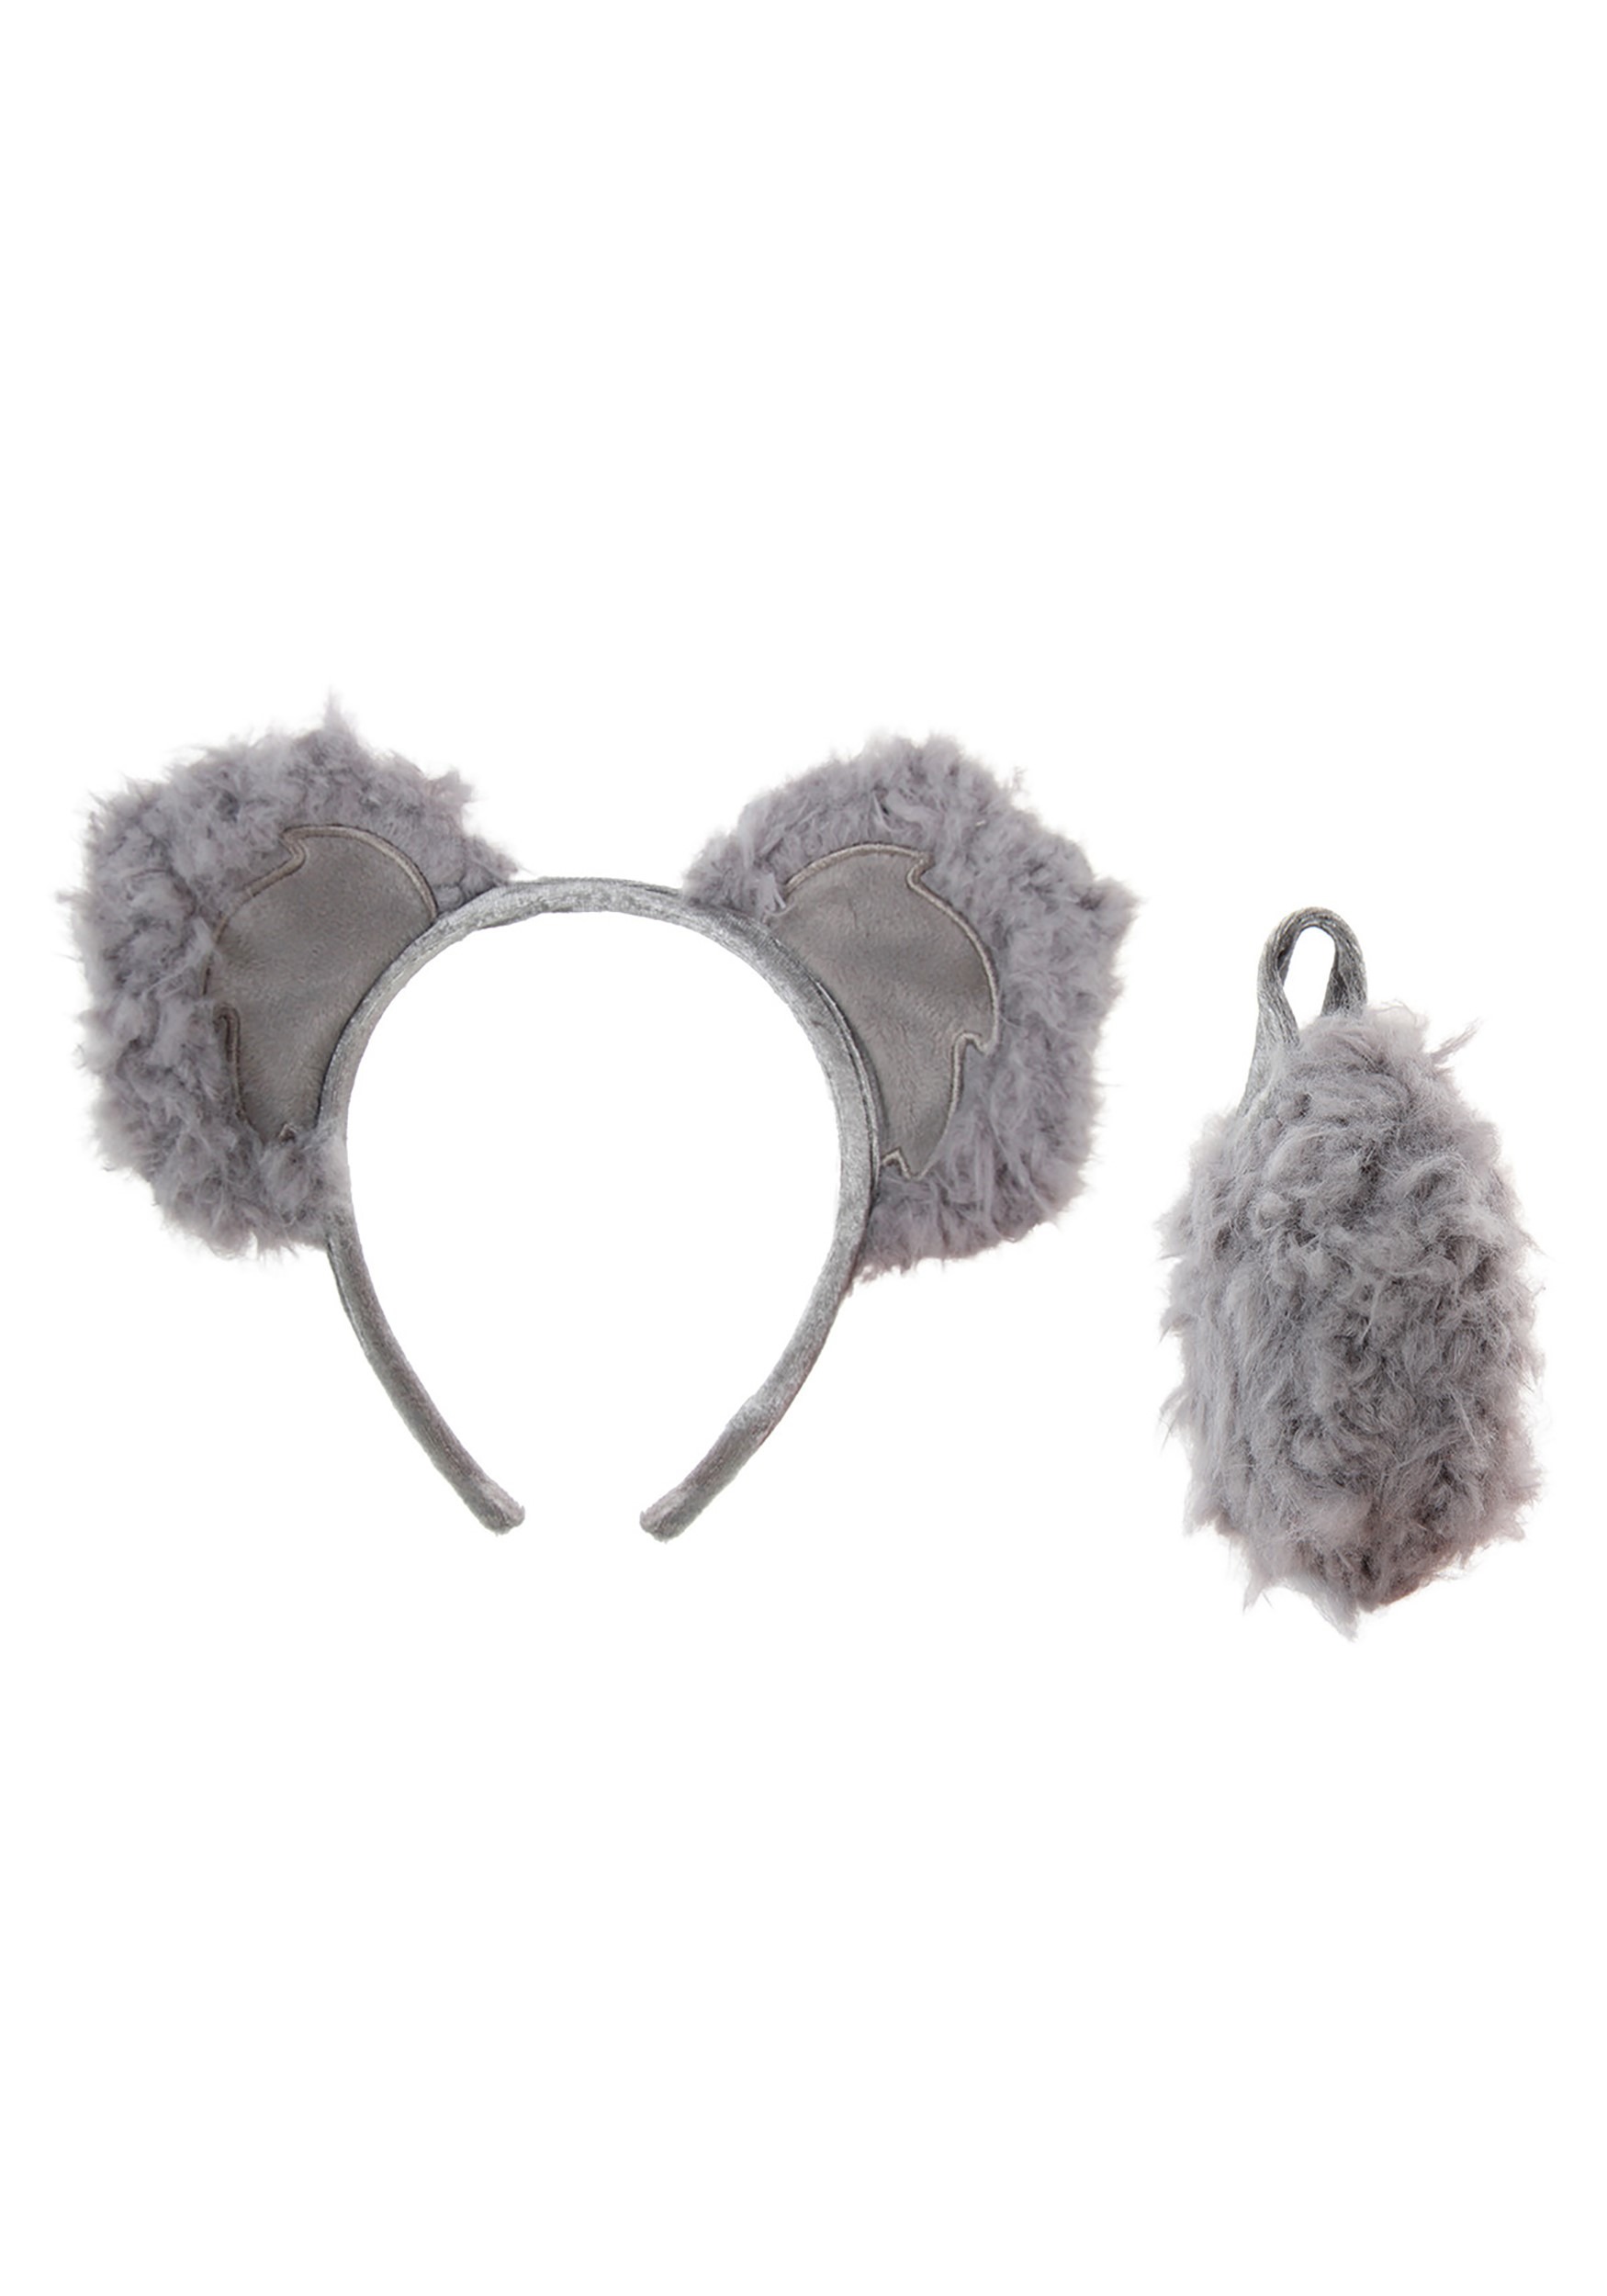 Koala Ears Headband And Tail Kit